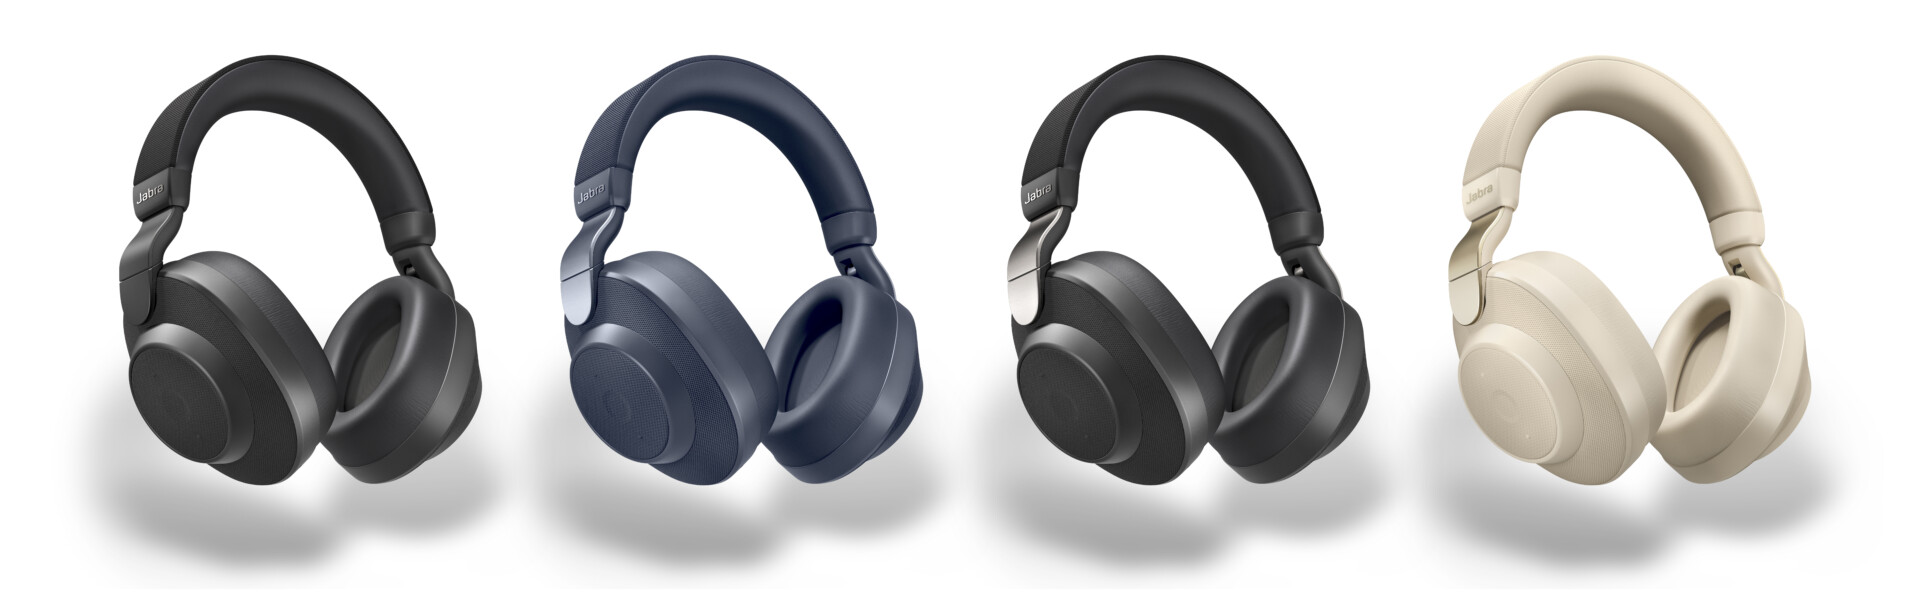 Jabra product image of the Elite 85h headphones in black, navy, titanium black, and beige.